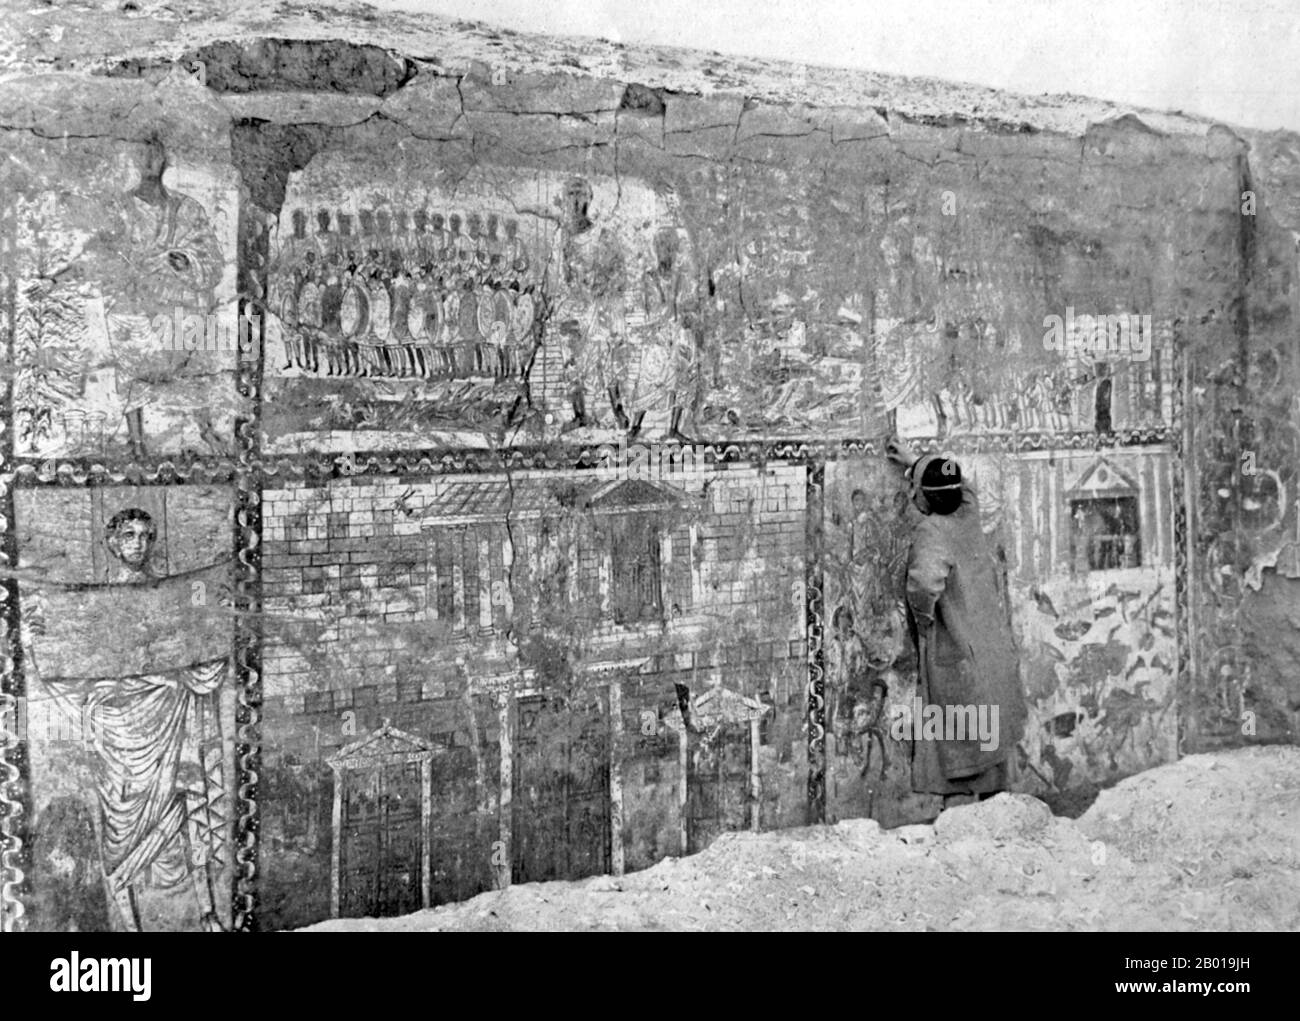 Syrien: Die Westwand der Synagoge von Dura Europos kurz nach ihrer Entdeckung im Jahr 1932, am 29. Juli 1933. Die Dura Europos Synagoge ist eine alte Synagoge, die 1932 in Dura-Europos, Syrien, entdeckt wurde. Die letzte Bauphase wurde durch eine aramäische Inschrift auf 244 u.Z. datiert, was sie zu einer der ältesten Synagogen der Welt macht. Es ist einzigartig unter den vielen alten Synagogen, die aus archäologischen Ausgrabungen entstanden sind, da es praktisch intakt erhalten wurde, und es verfügt über umfangreiche figurative Wandmalereien. Diese Fresken sind nun im Nationalmuseum von Damaskus ausgestellt. Stockfoto